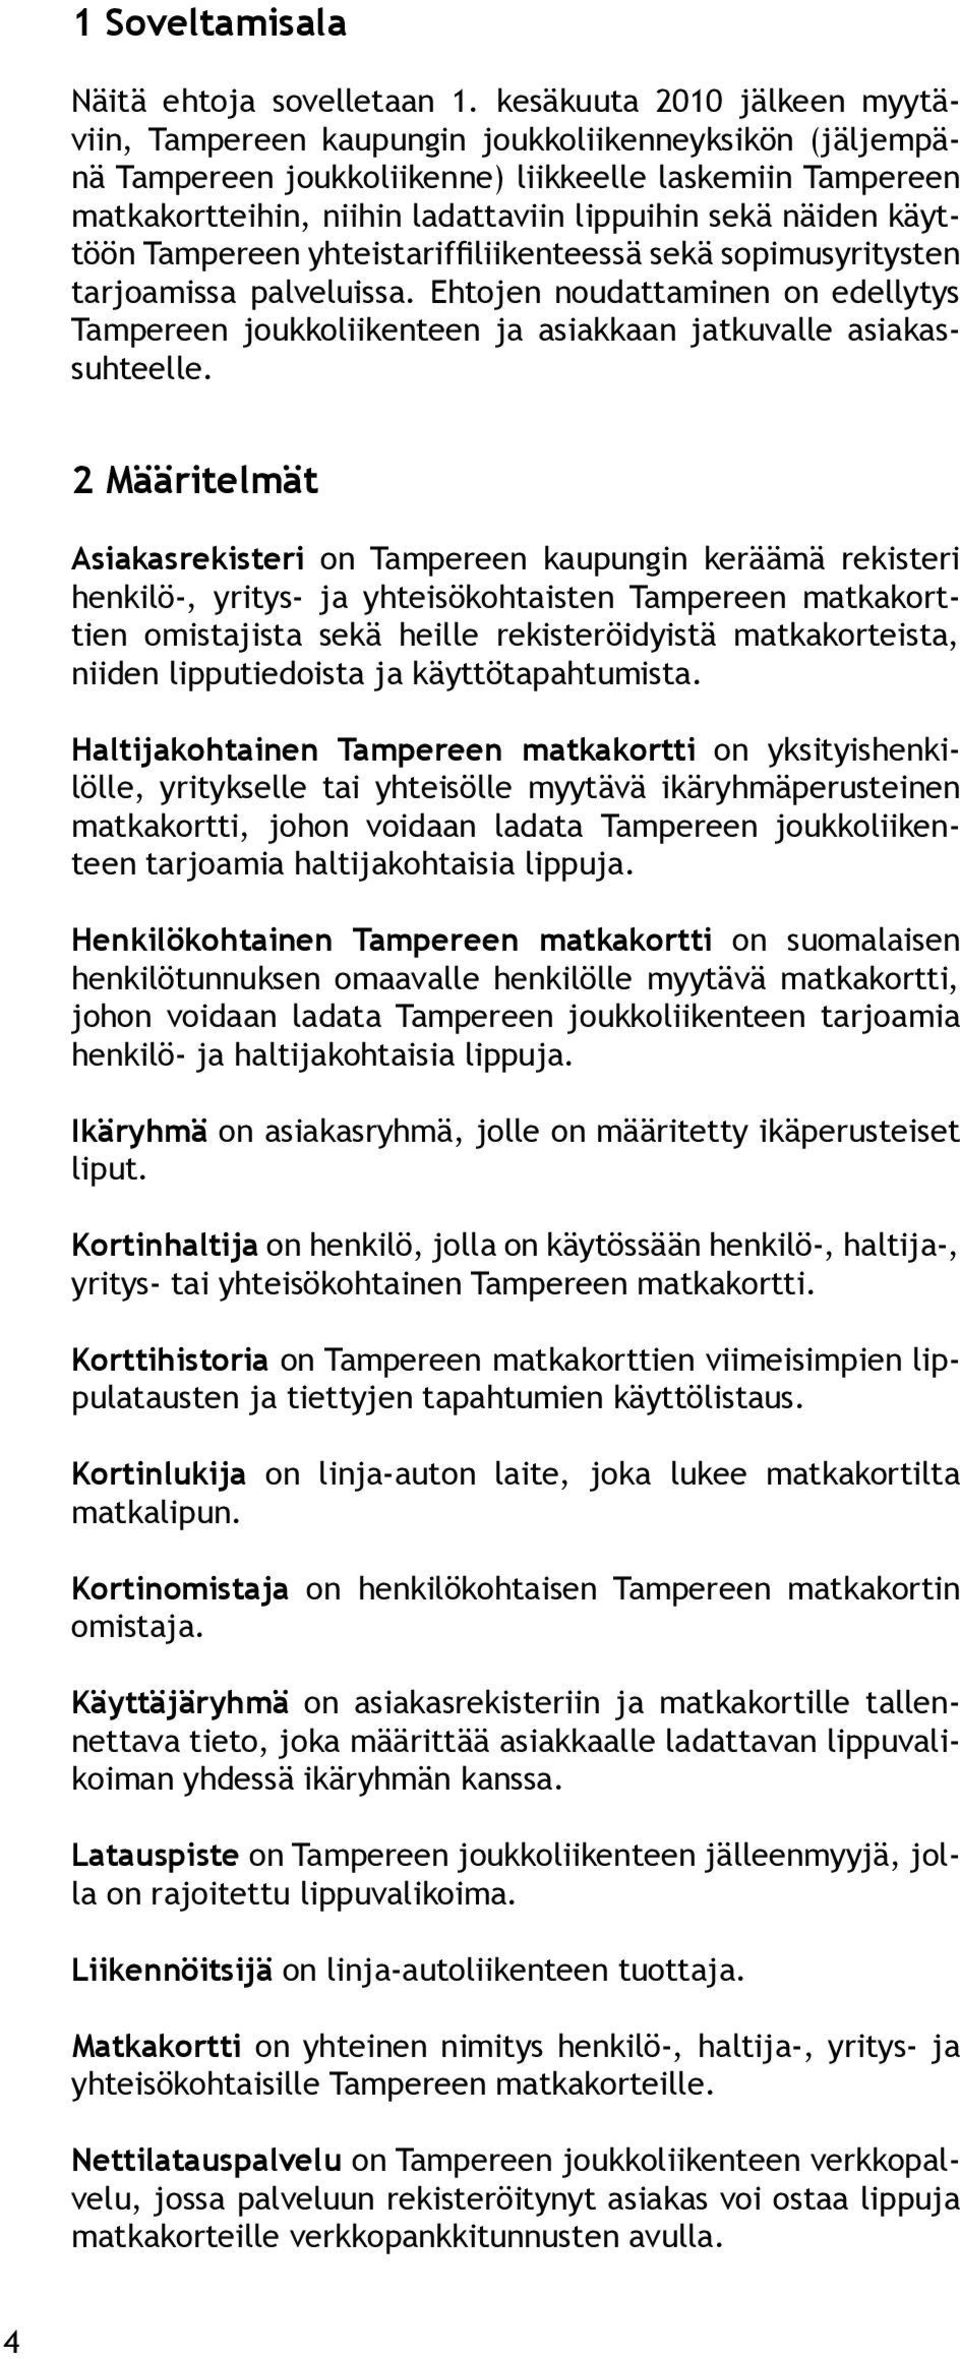 näiden käyttöön Tampereen yhteistariffiliikenteessä sekä sopimusyritysten tarjoamissa palveluissa.